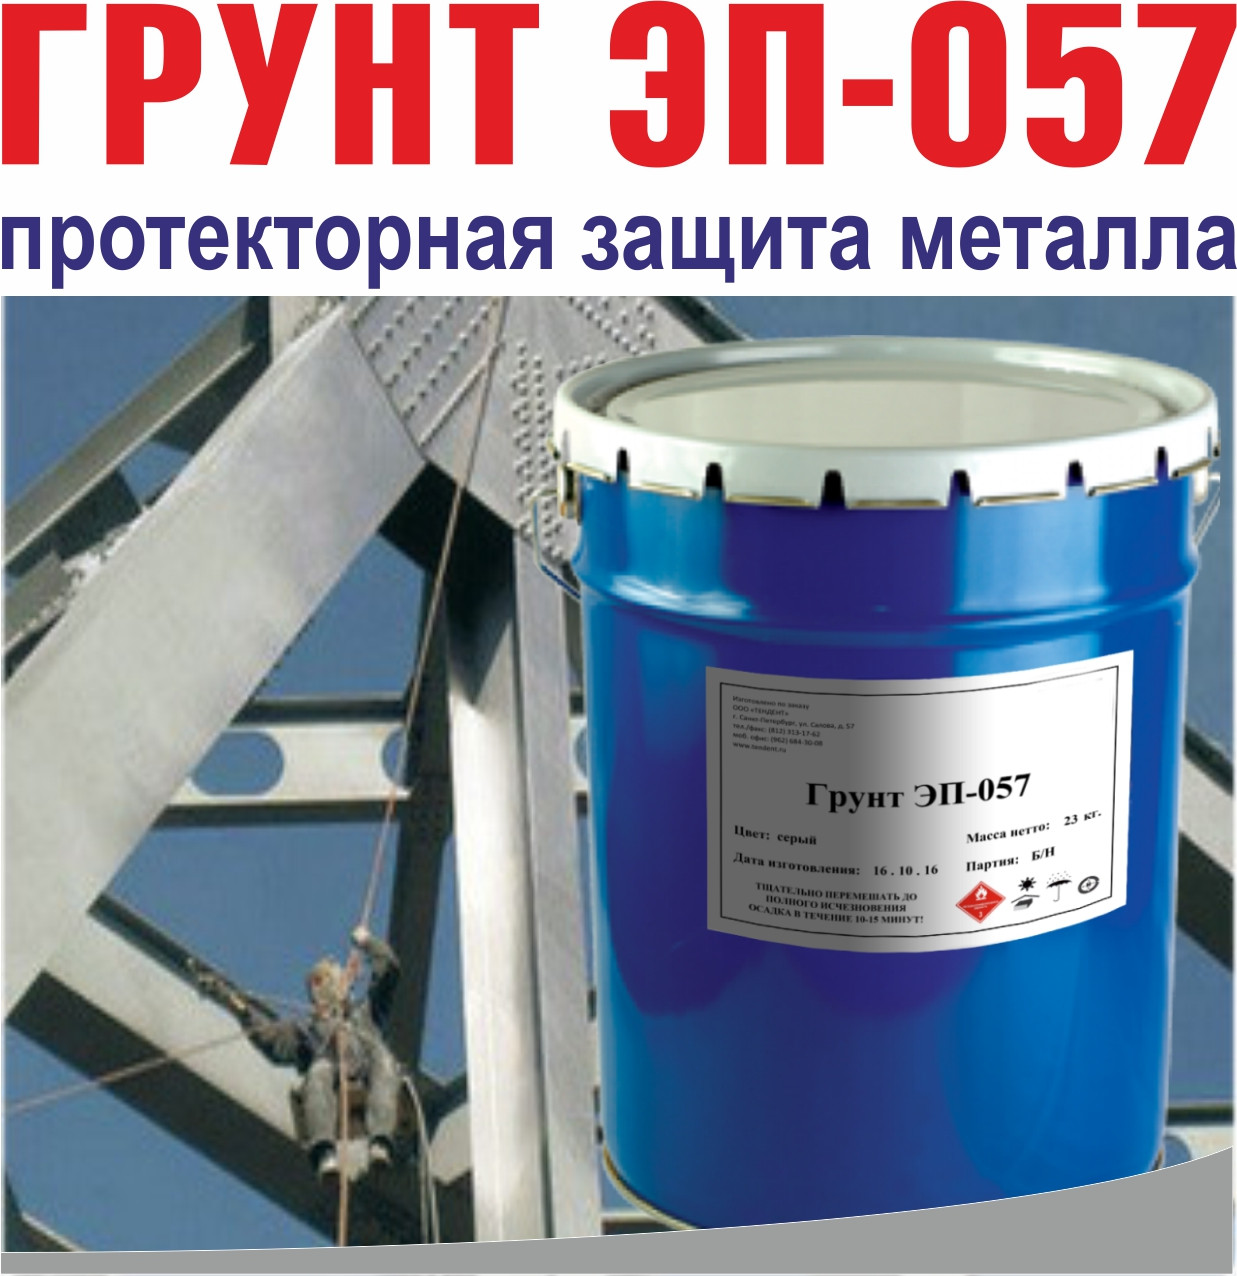 Грунтовка ЭП-057 – протекторная защита металла, фото 1